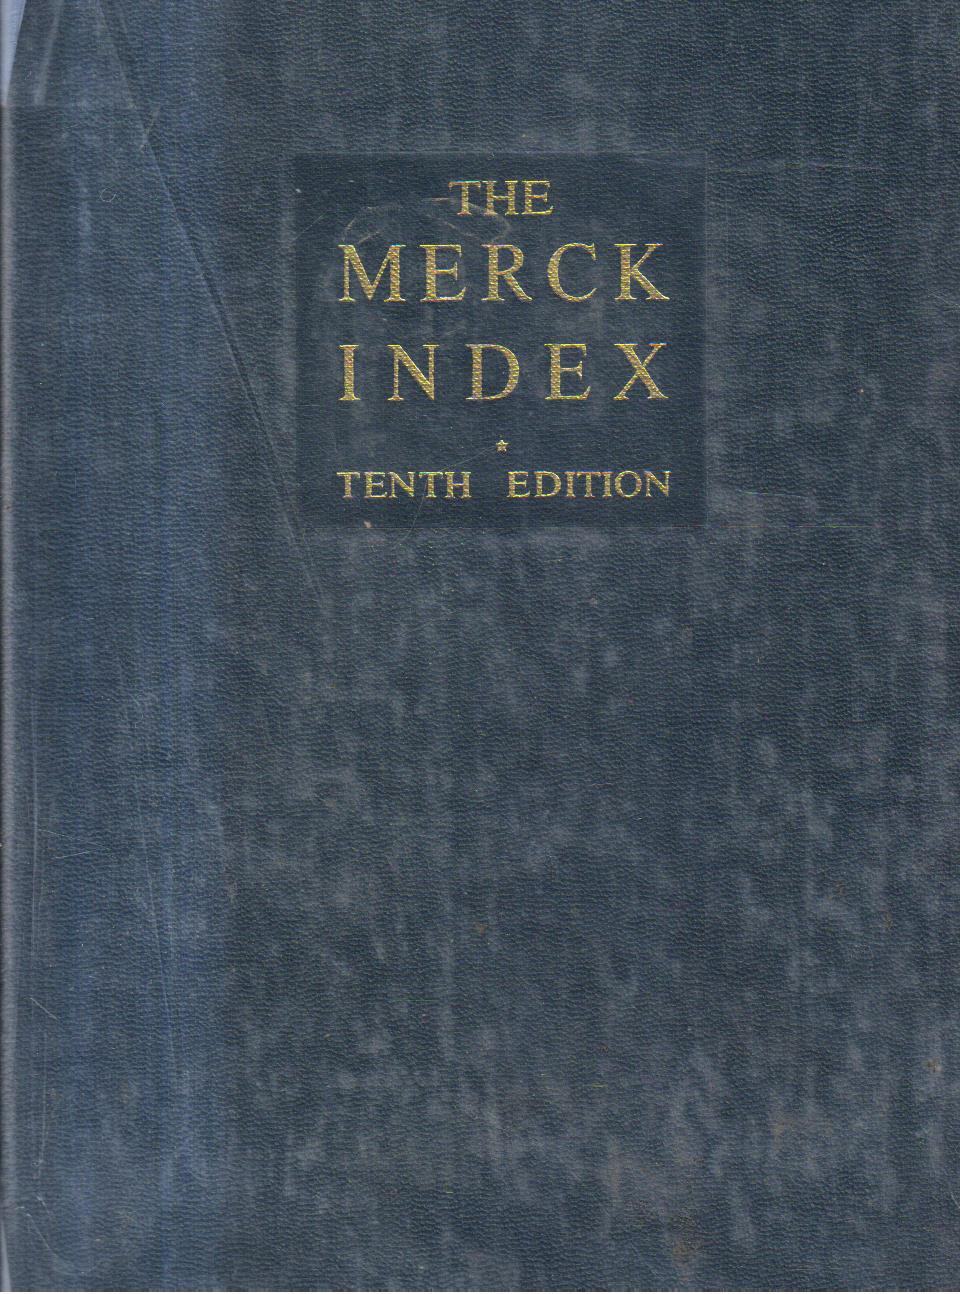 The Merck Index.